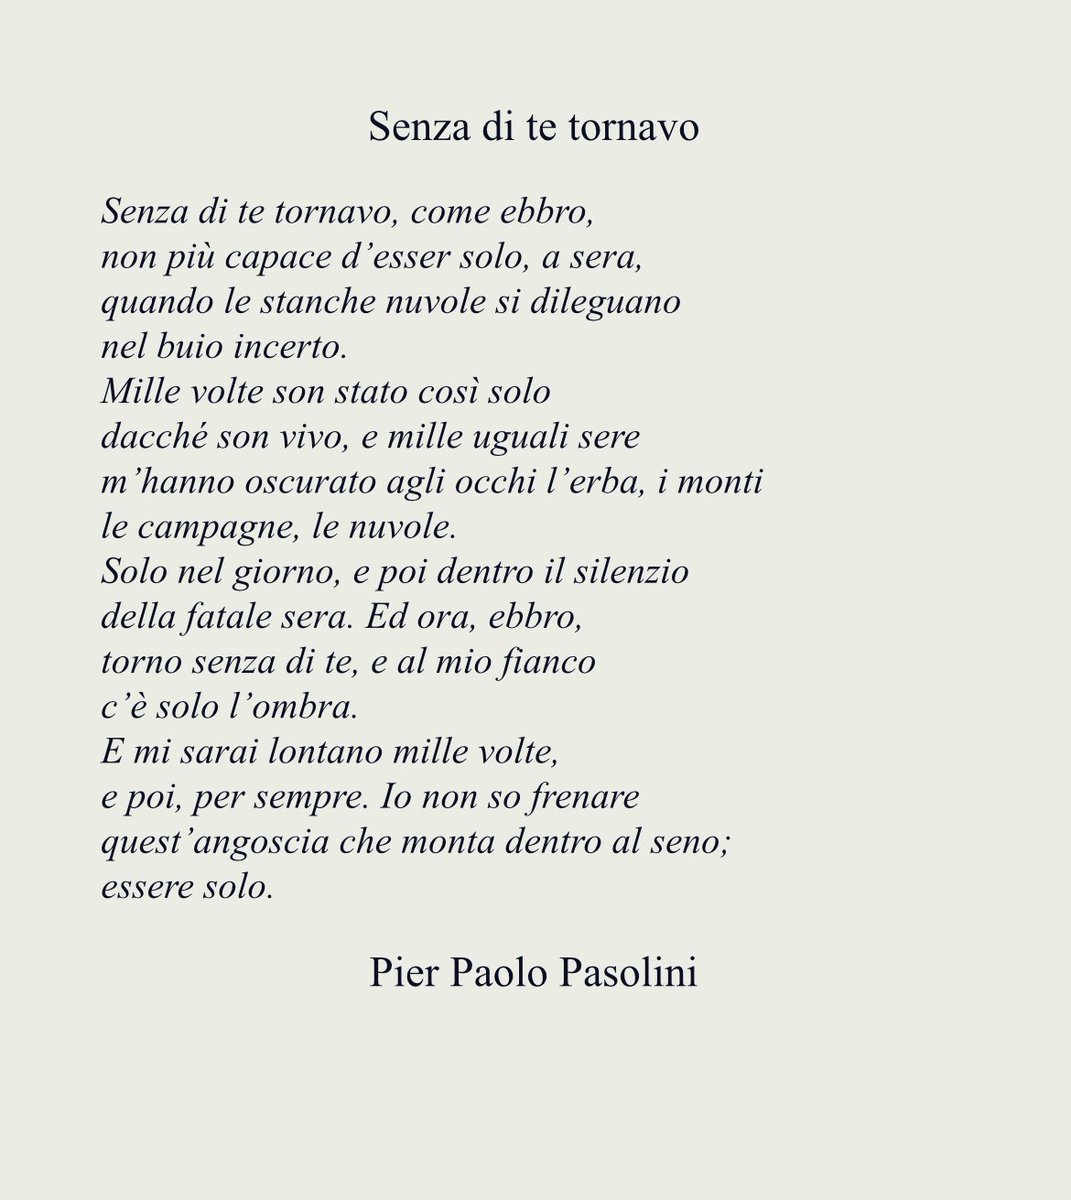 La Poesia del Lunedì. La solitudine è frequente fonte di ispirazione per i poeti, lo abbiamo visto con Rilke e Tupac Shapur. E’ anche il tema di questa bella poesia di Pier Paolo Pasolini: Senza di te tornavo.